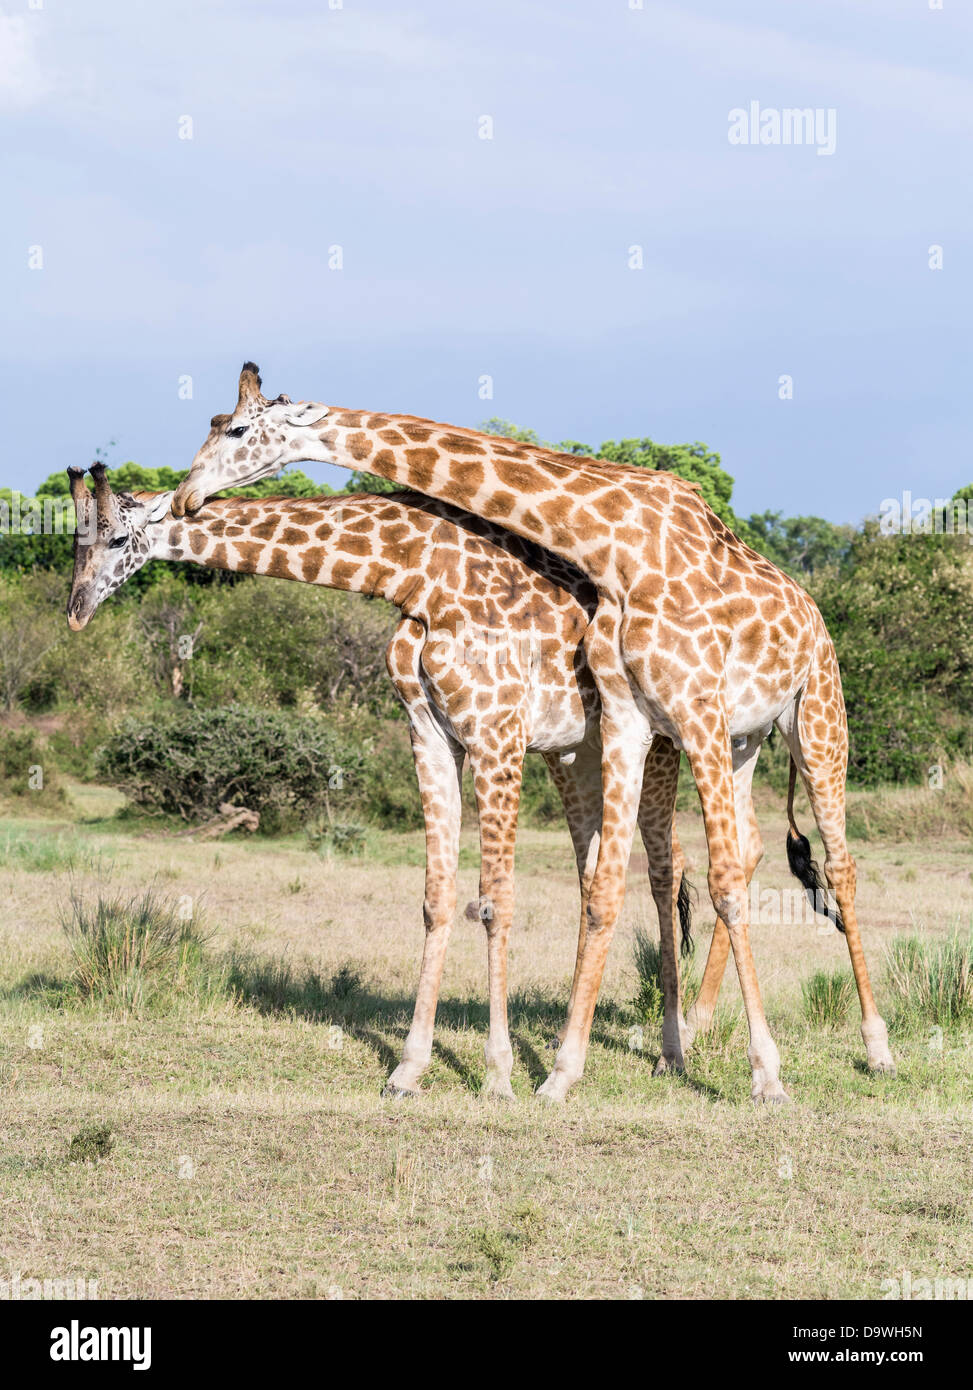 Kenia, Afrika. Zwei bull Maasai Giraffe Einschnürung und anzeigen. Einschnürung herstellt Dominanz. (Großformatige Größen erhältlich). Stockfoto